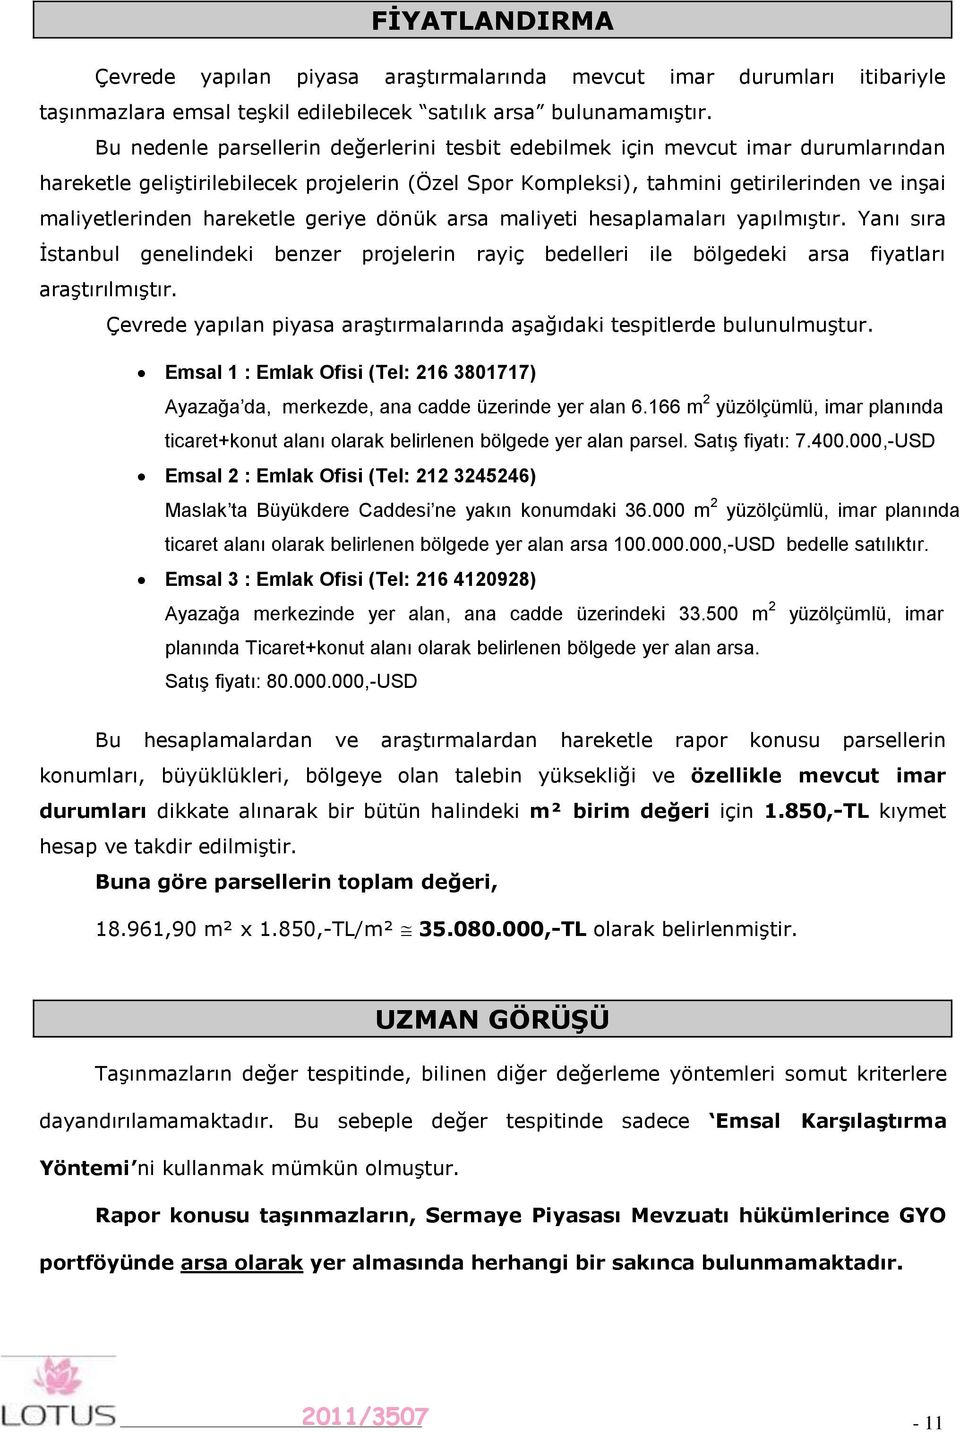 hareketle geriye dönük arsa maliyeti hesaplamaları yapılmıştır. Yanı sıra İstanbul genelindeki benzer projelerin rayiç bedelleri ile bölgedeki arsa fiyatları araştırılmıştır.